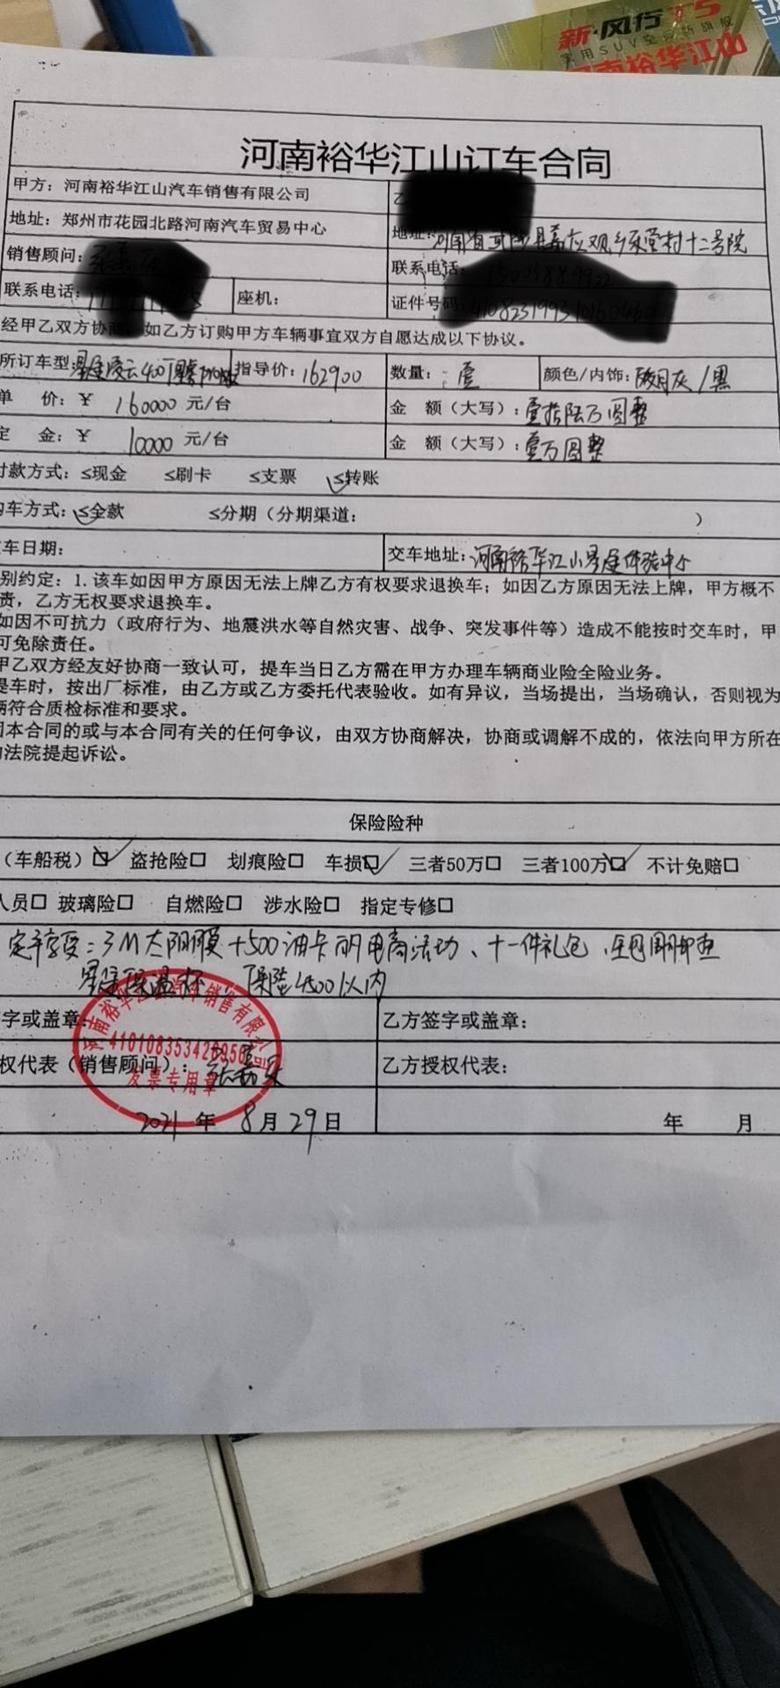 星途凌云29号远程订车，郑州车友留言。郑州有10000全损车补贴。